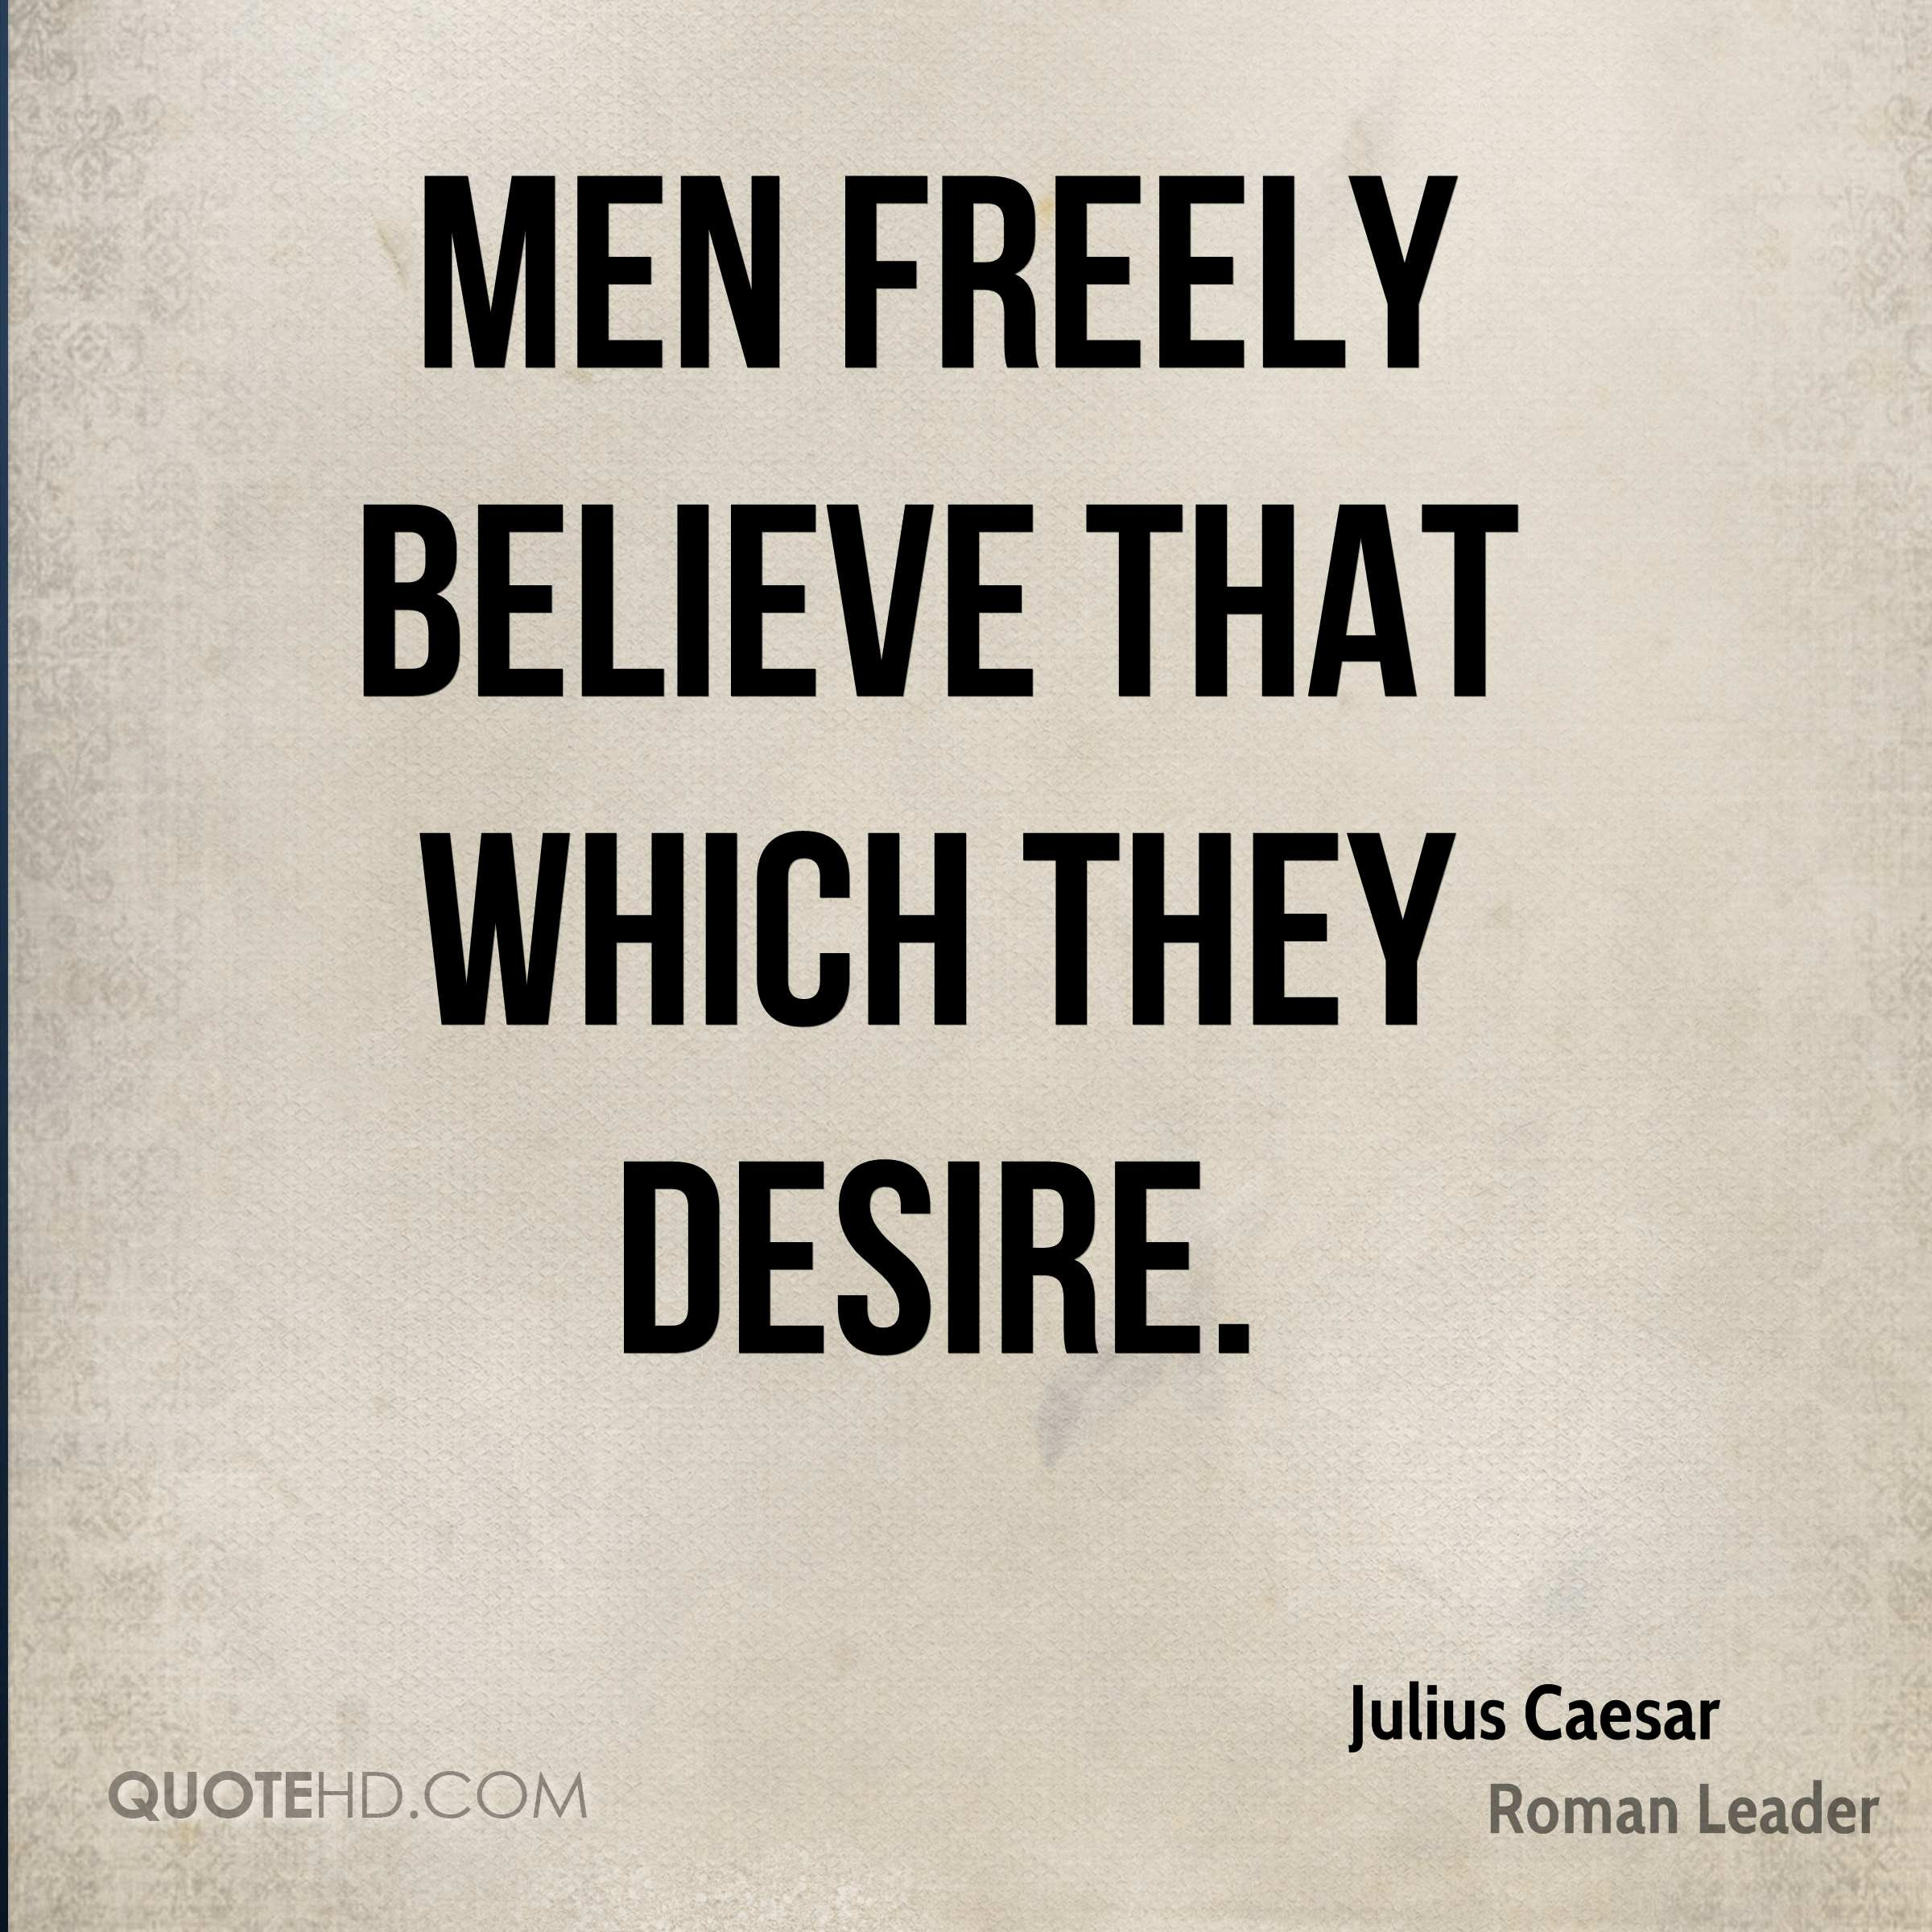 Julius Caesar Leadership Quotes
 Julius caesar leadership quotes Julius Caesar s